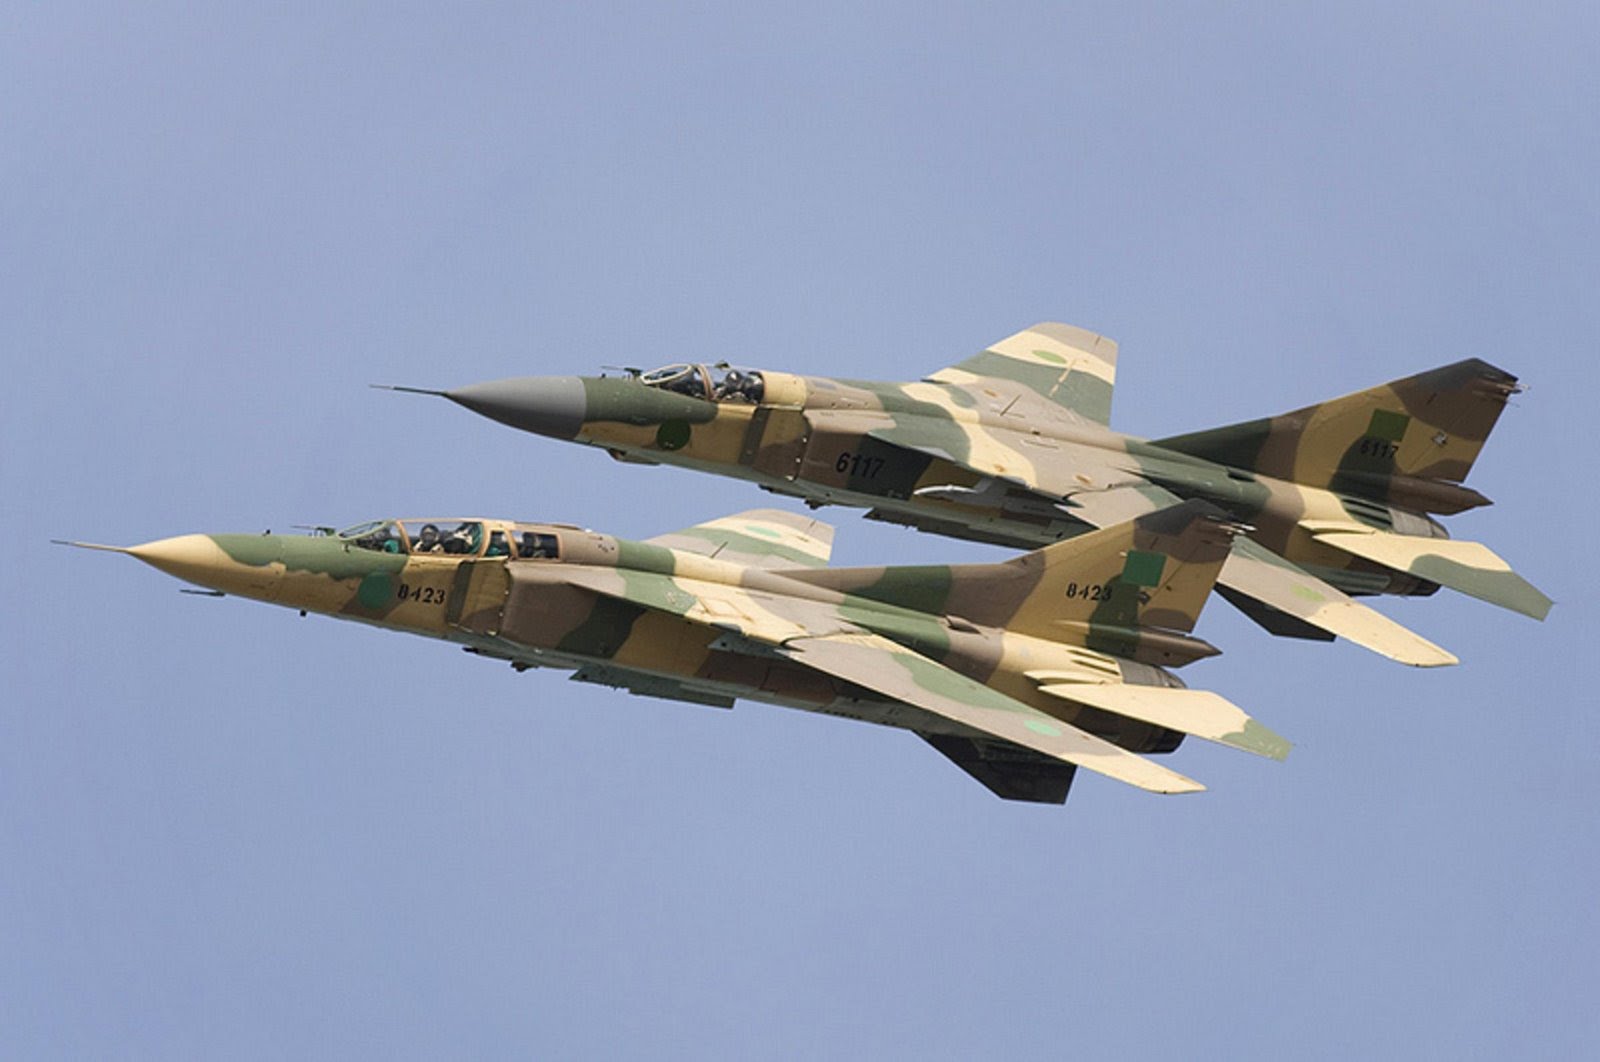 Photo: MiG-23 fighter jets of Libya